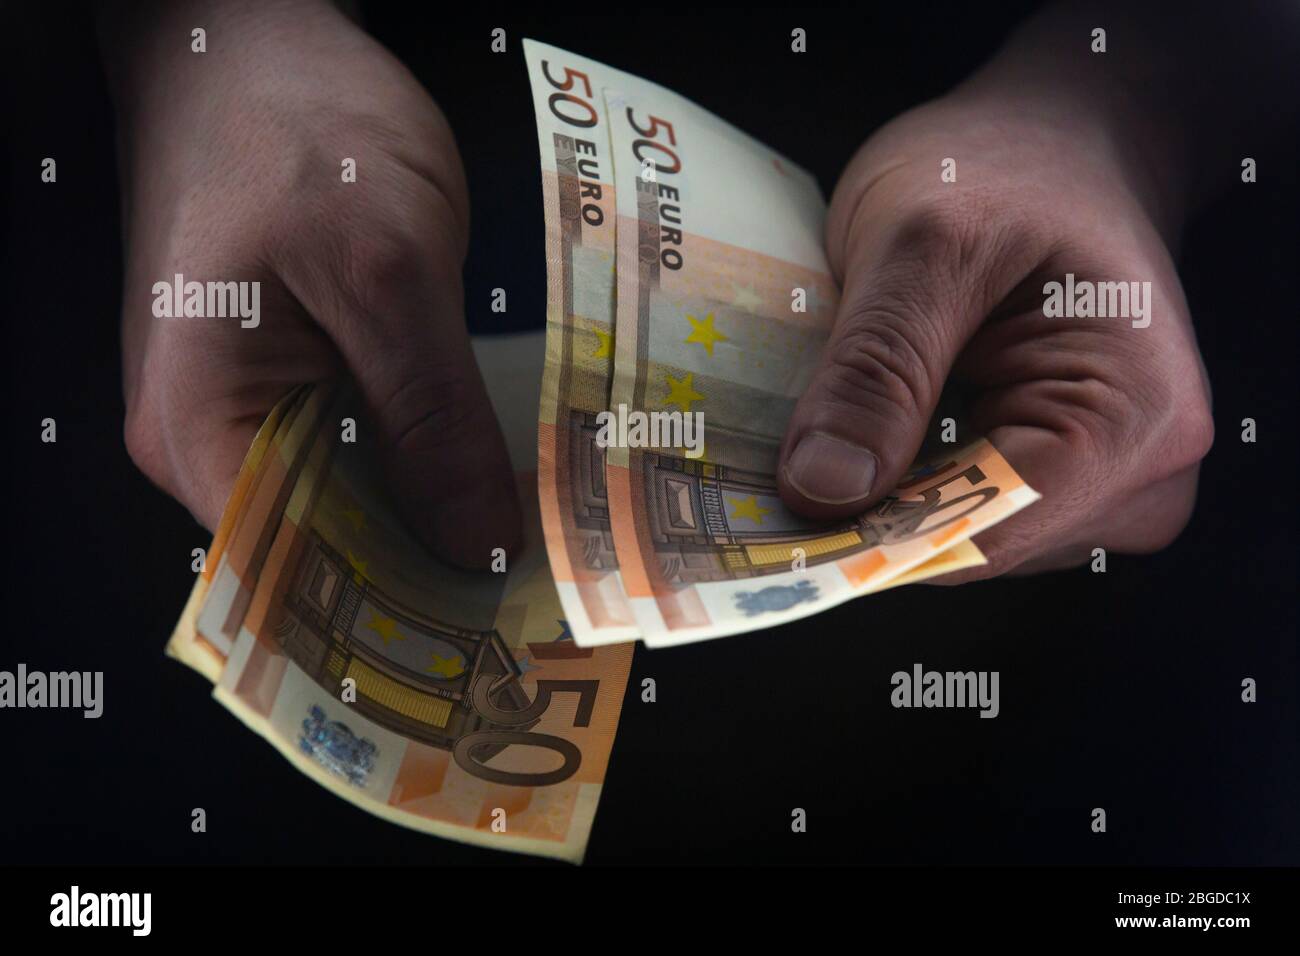 Hombre que sostiene 50 BILLETES DE EUROS en una habitación oscura, dinero ilegal, concepto de avaricia. Foto de stock